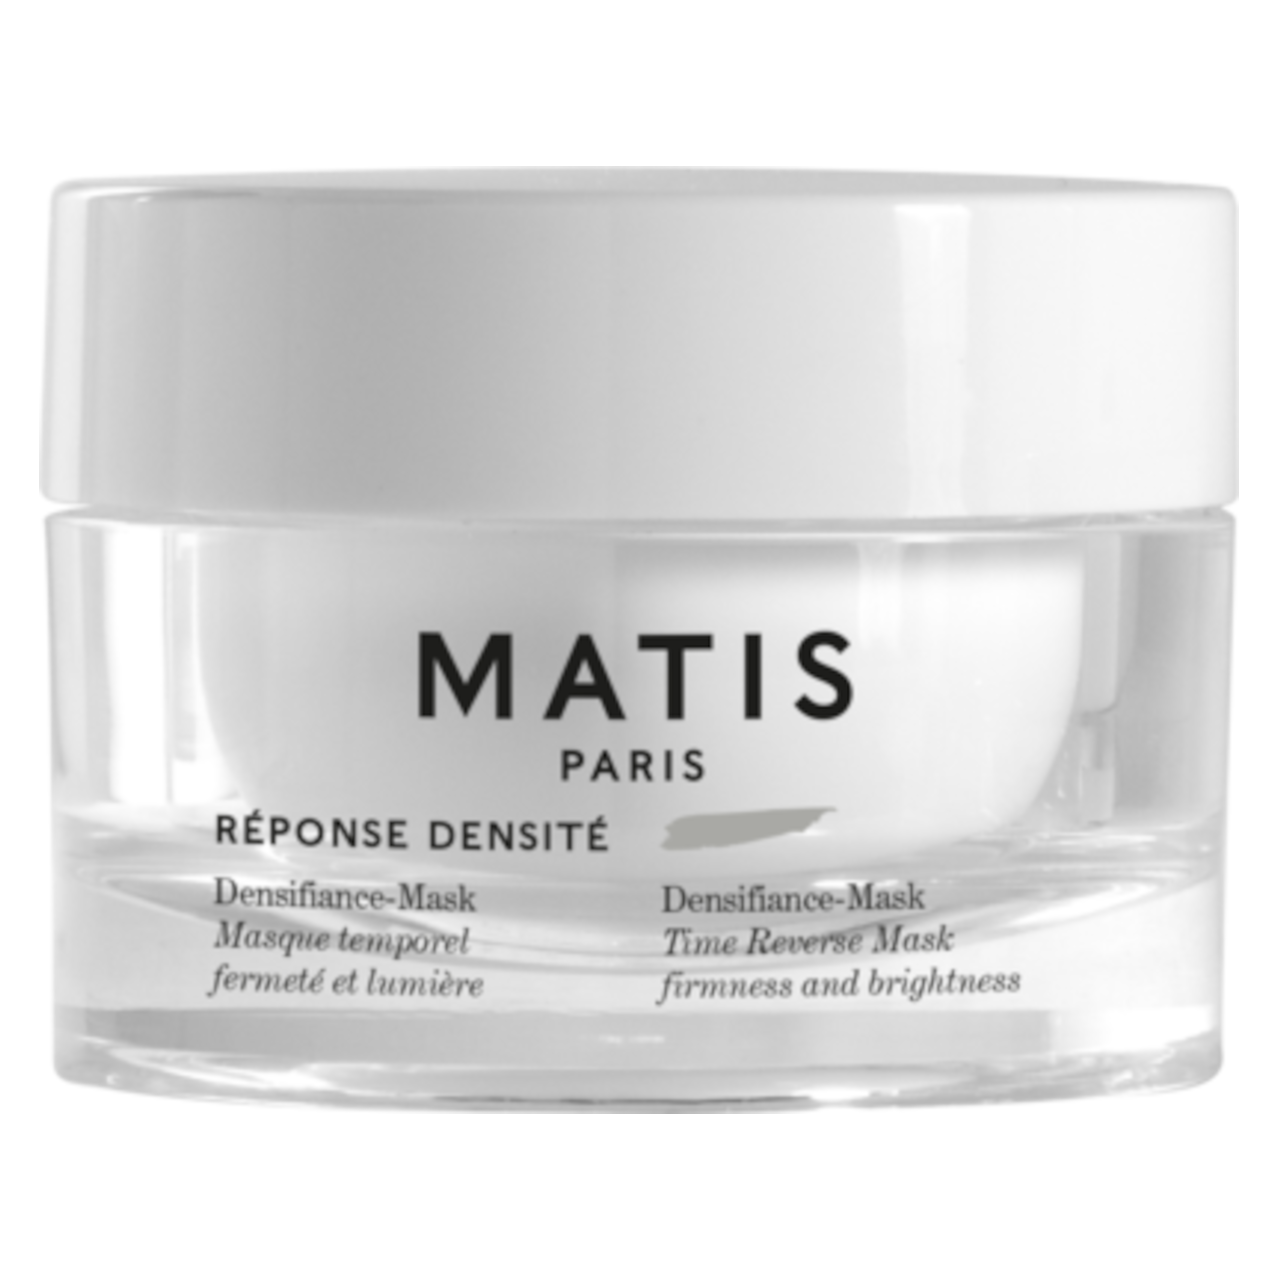 Matis Paris Reponse Densite Densifiance-Mask